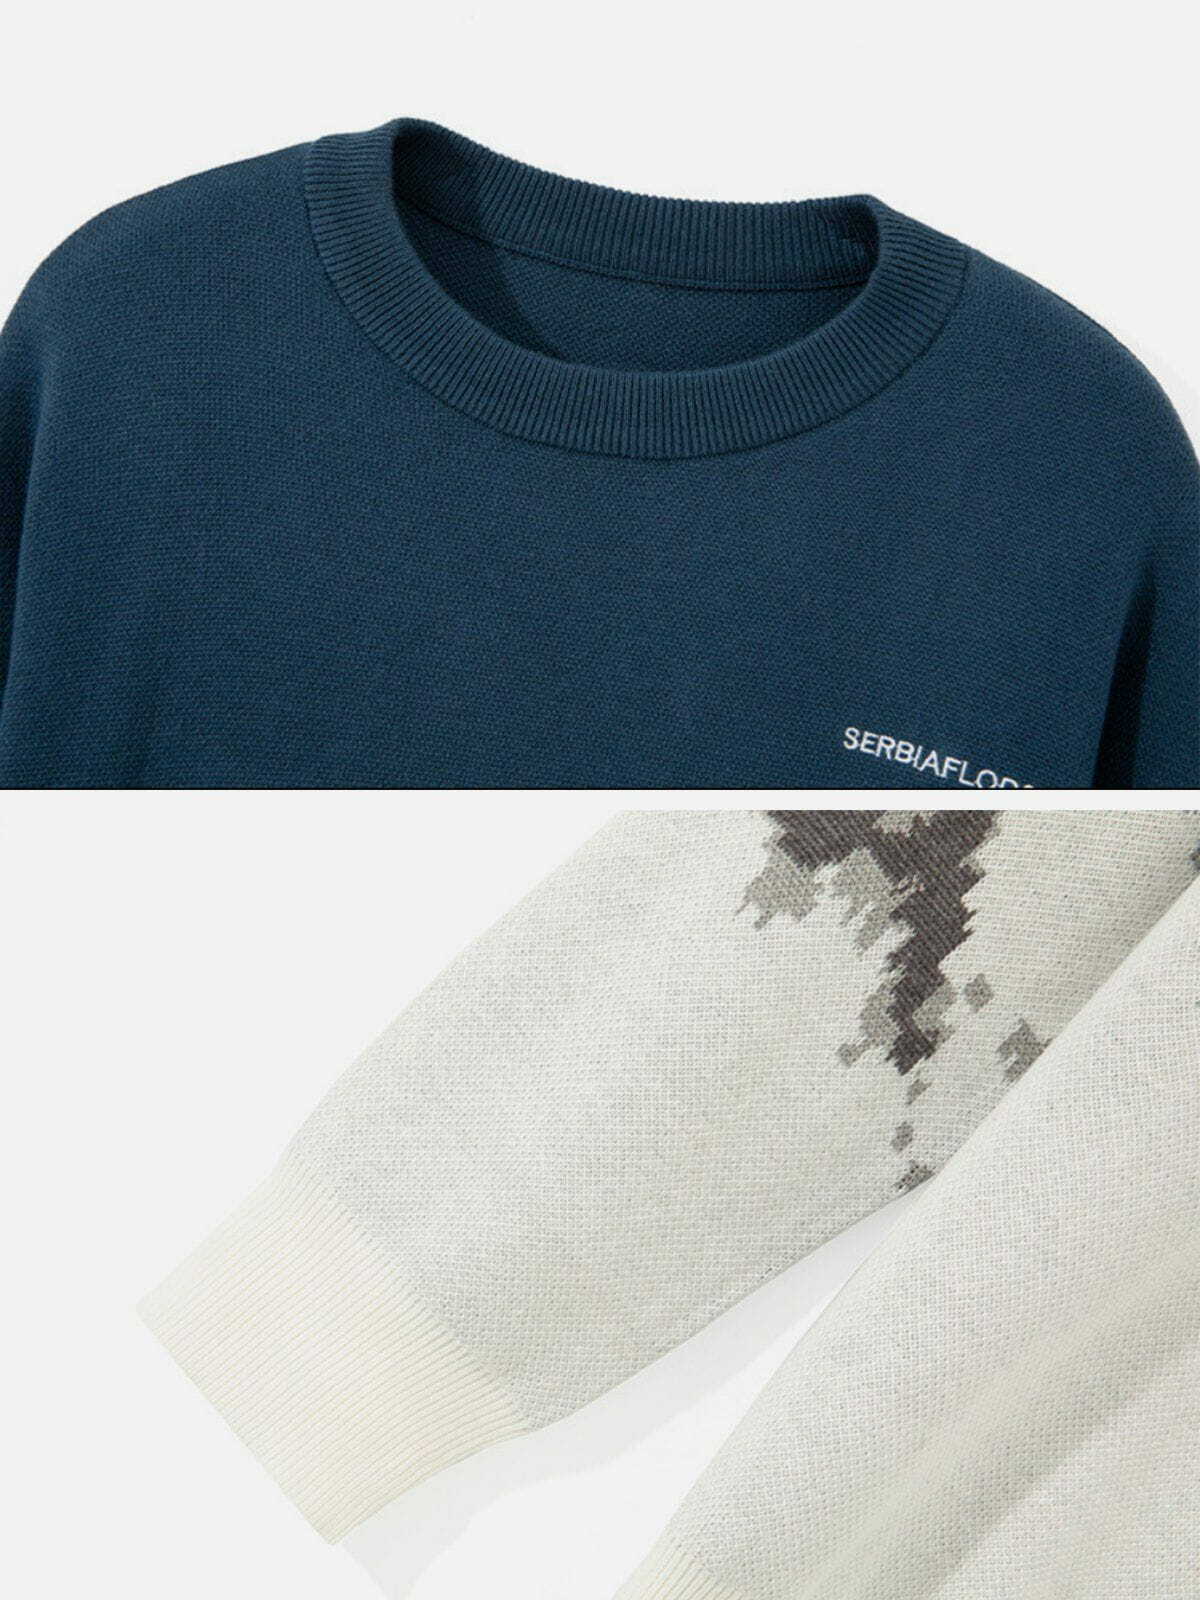 mountain landscape jacquard sweater edgy y2k streetwear 7631